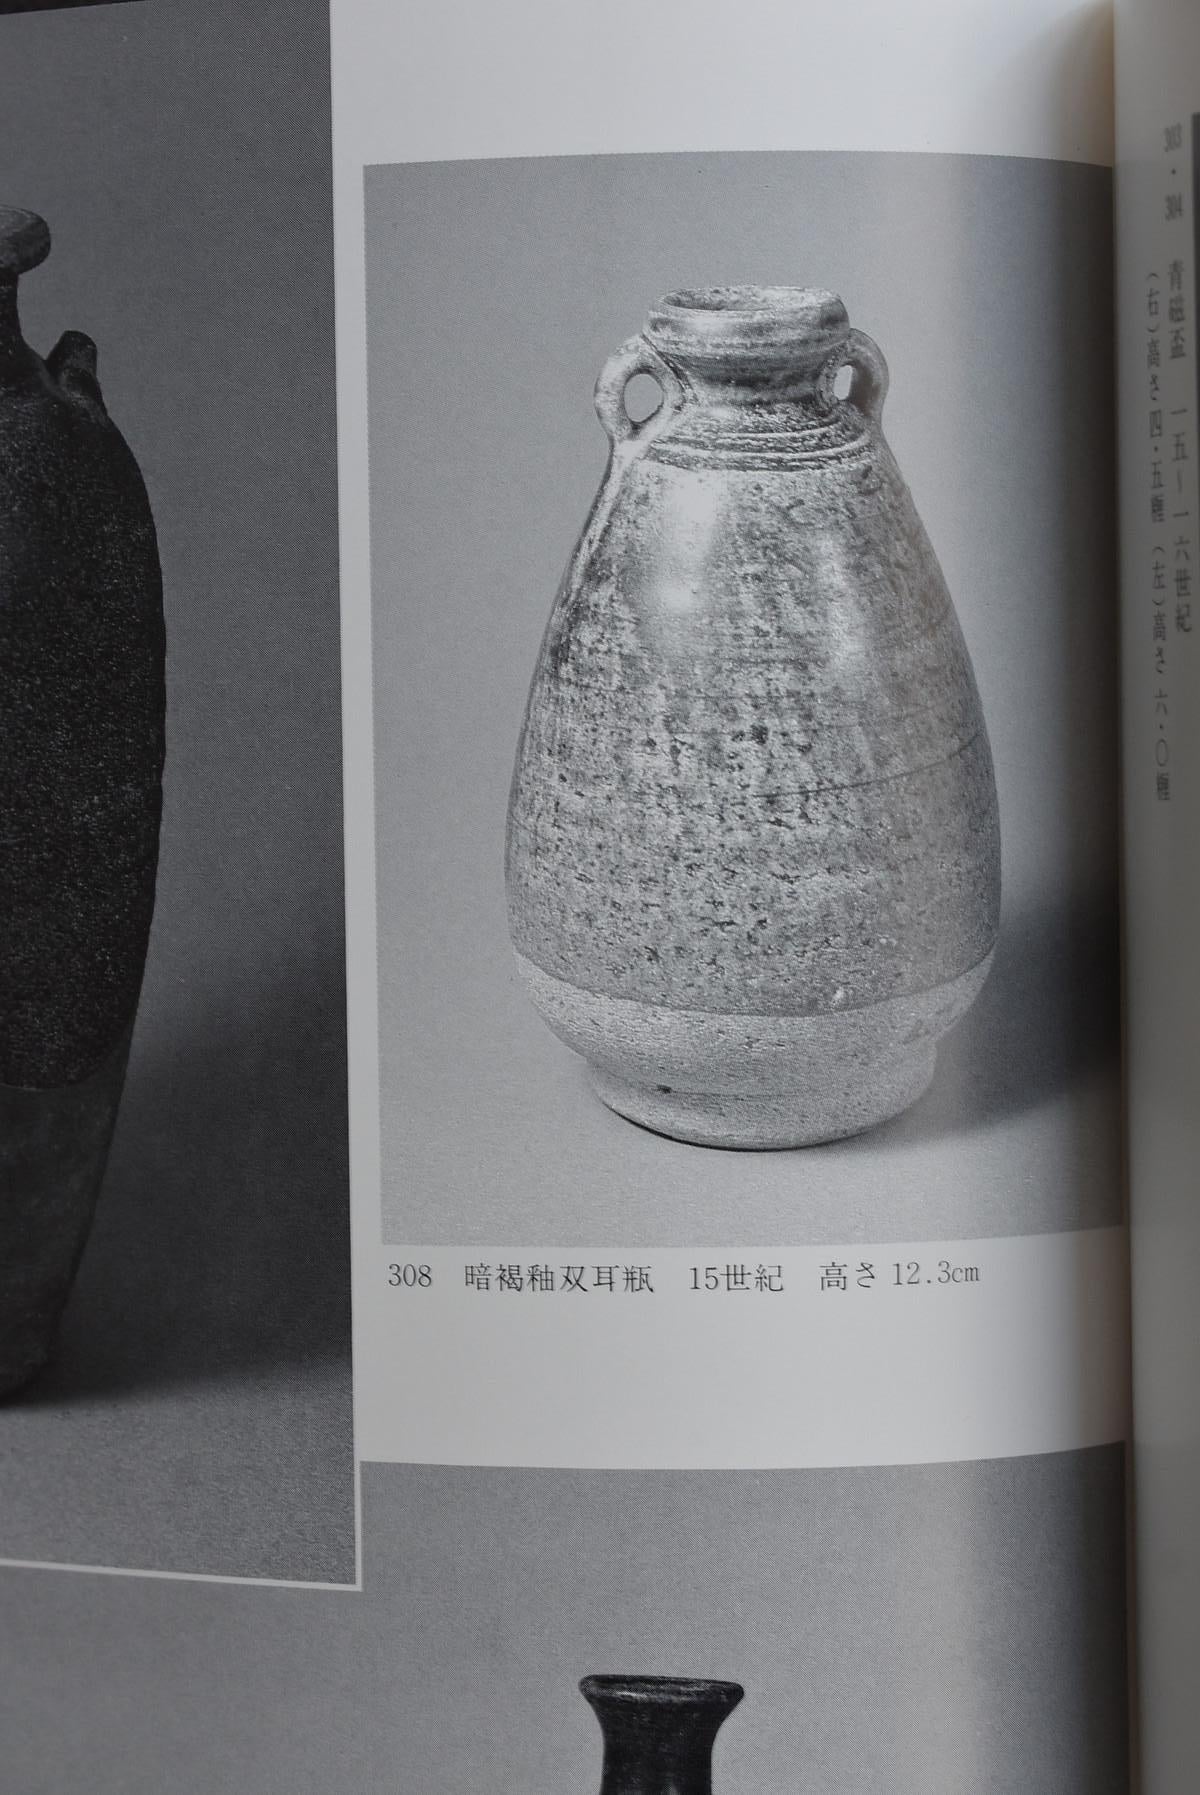 Thai Antique Bottle 15th Century / Old Vase / Southeast Asian Antiques 12